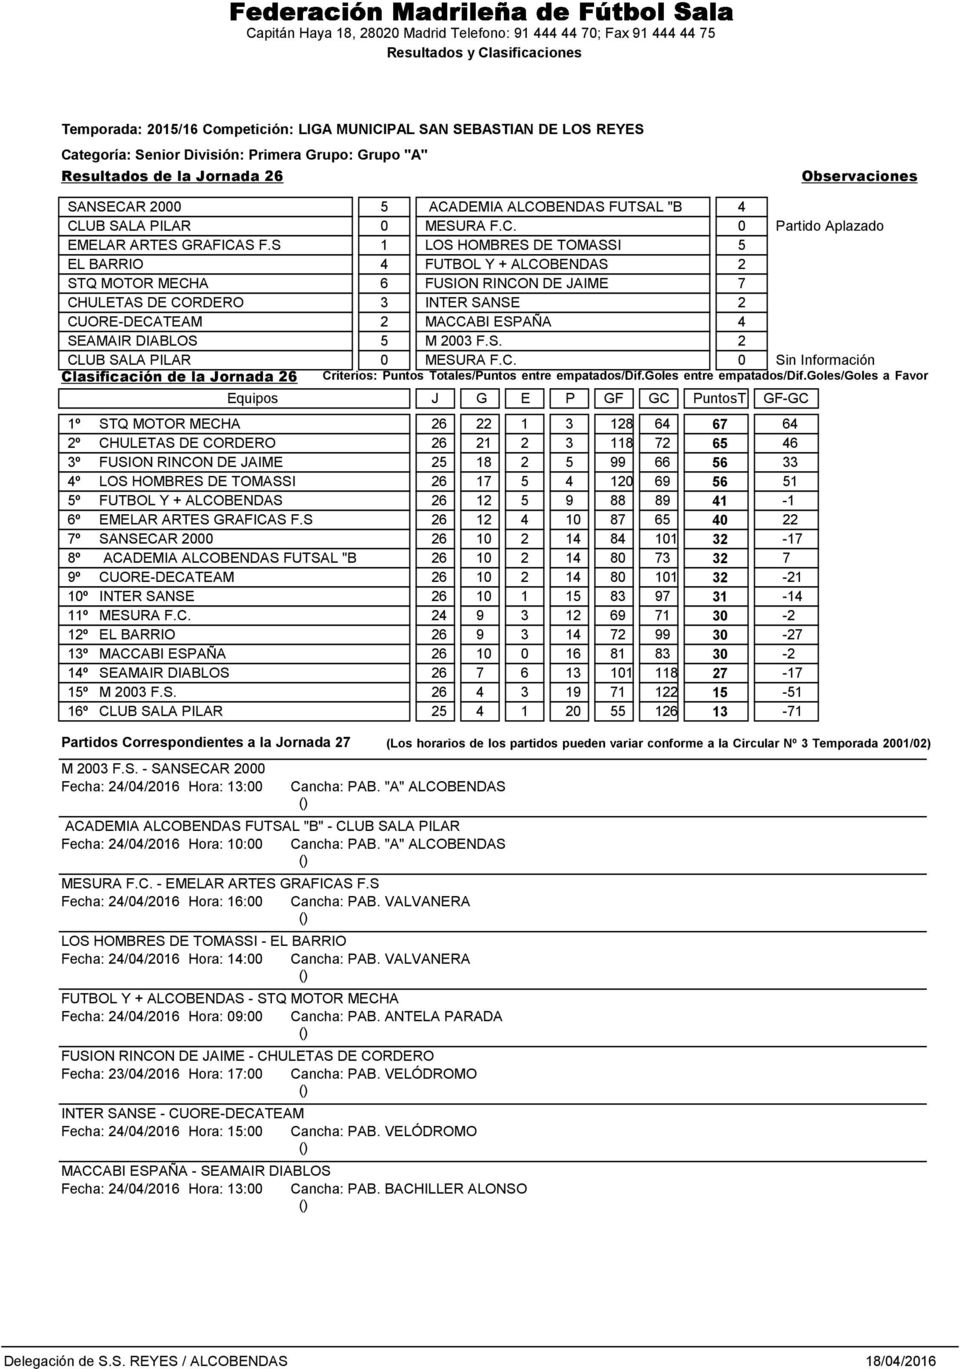 2003 F.S. 2 CLUB SALA PILAR 0 MESURA F.C. 0 Sin Información Clasificación de la Jornada 26 Criterios: Puntos Totales/Puntos entre empatados/dif.goles entre empatados/dif.